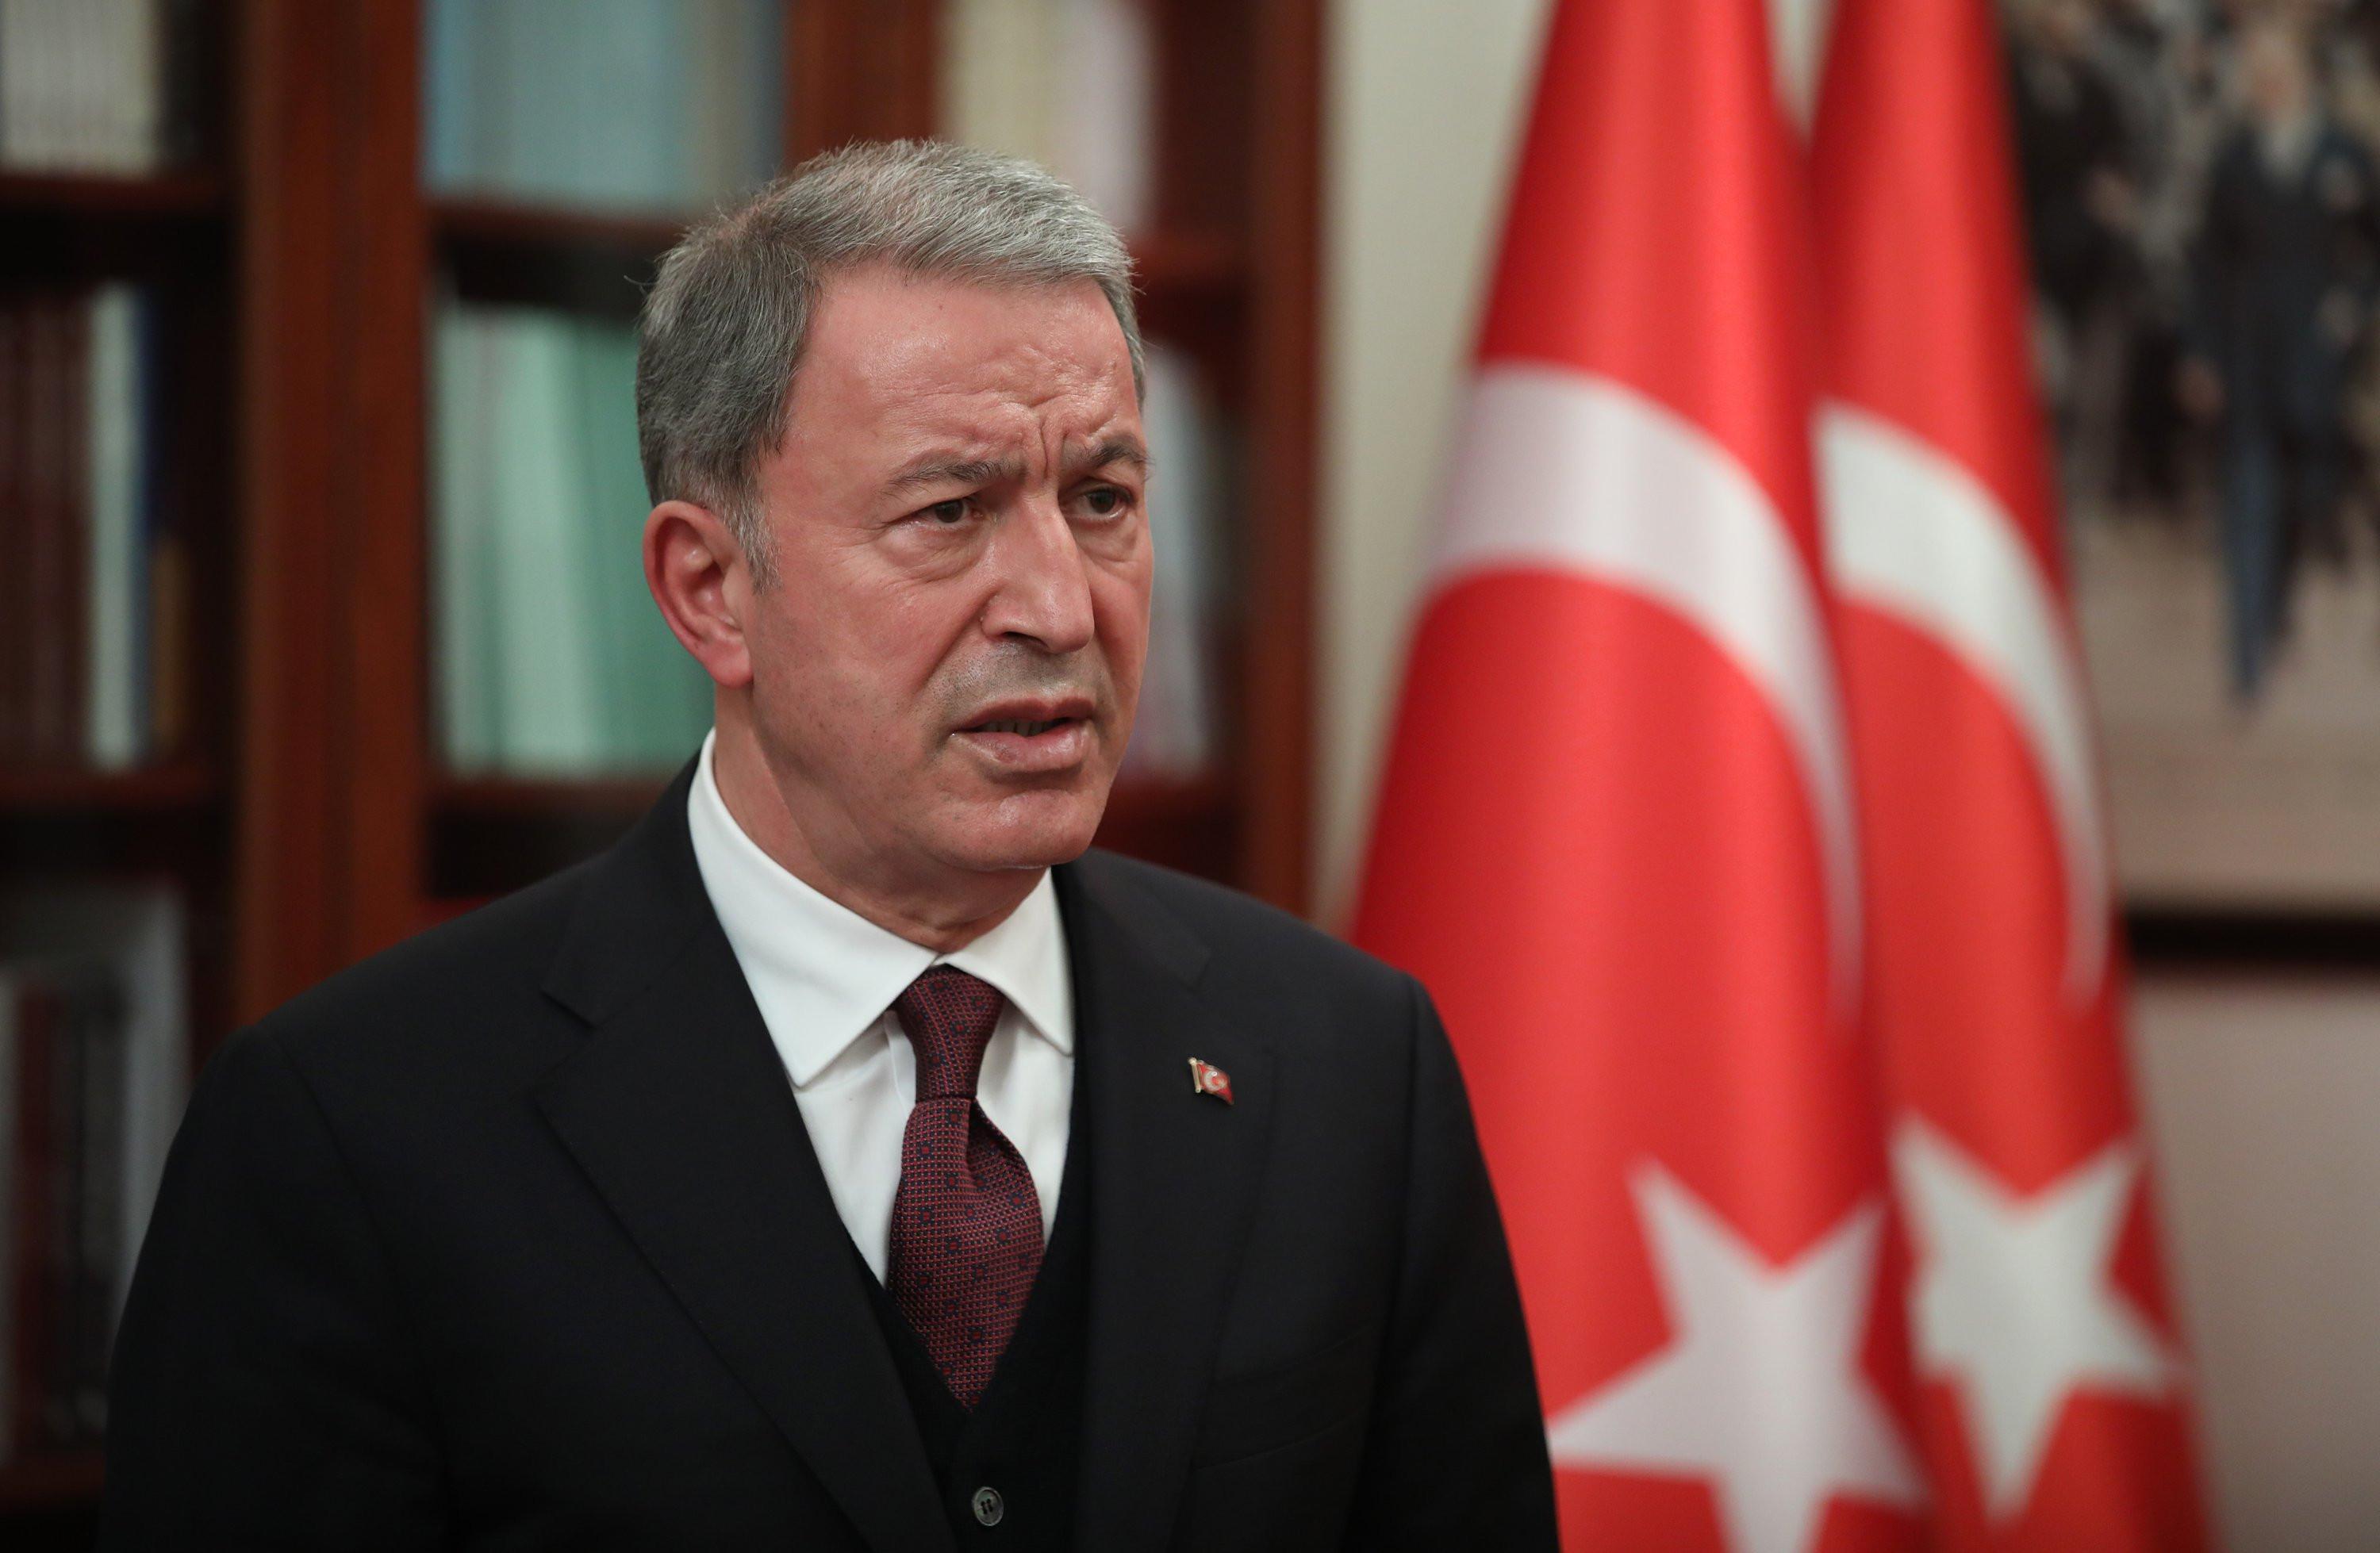 Թուրքիան ու Ադրբեջանը խաղաղության ձեռք են մեկնել Հայաստանին. Թուրքիայի ՊՆ |hetq.am| - infocom.am